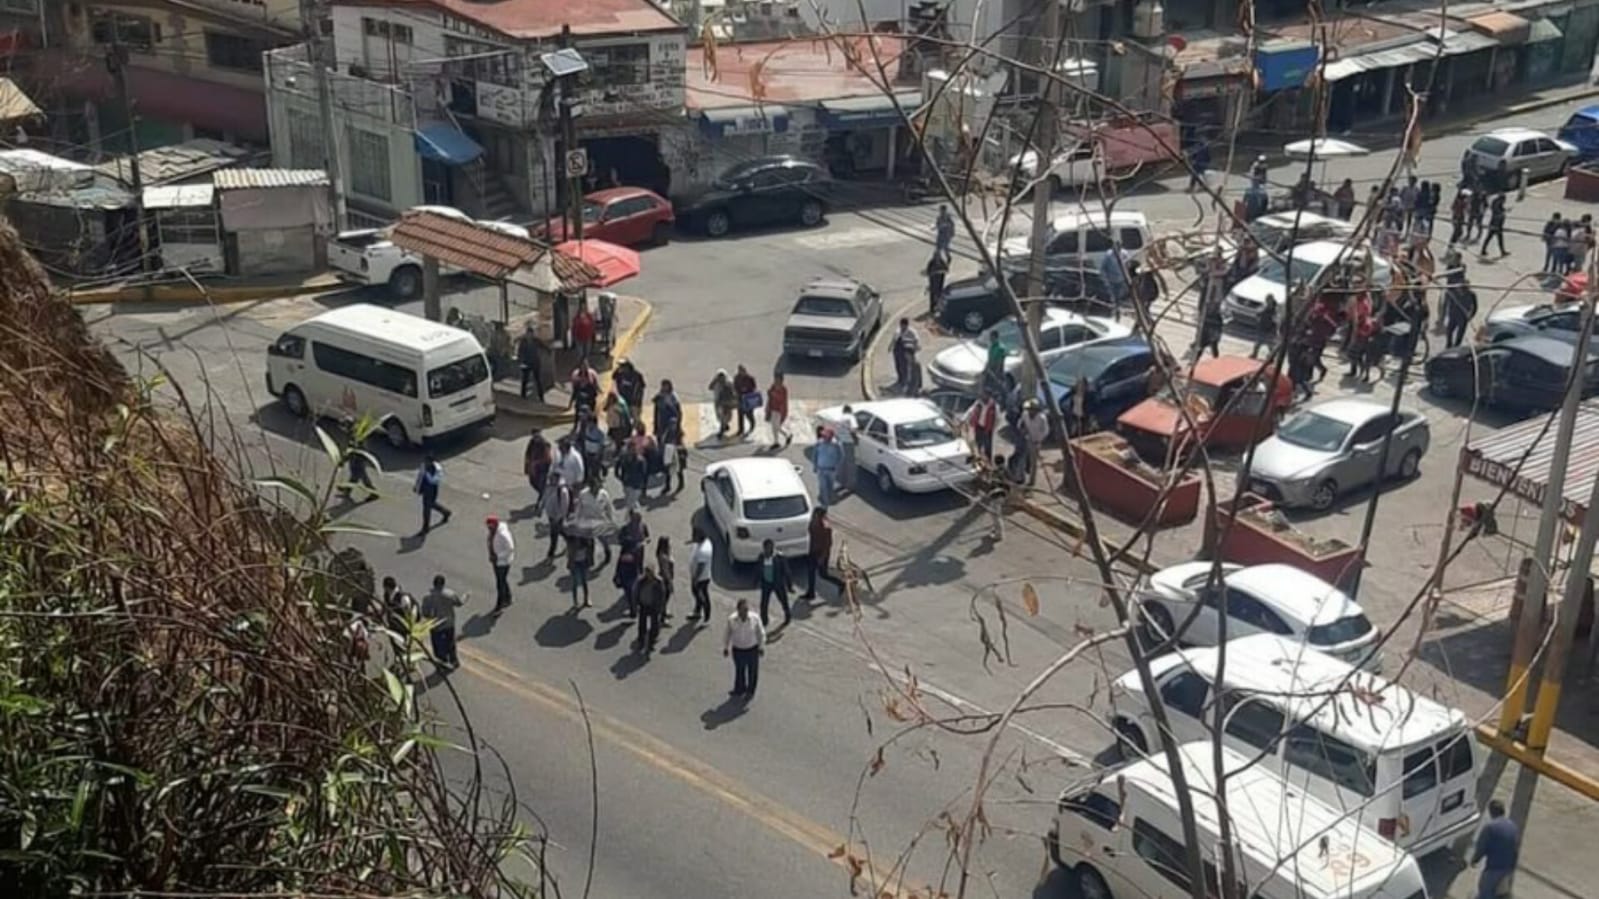 Exigen seguridad con bloqueo vecinos de San Francisco Chimalpa, en Naucalpan. Foto: FB Caballero Camino